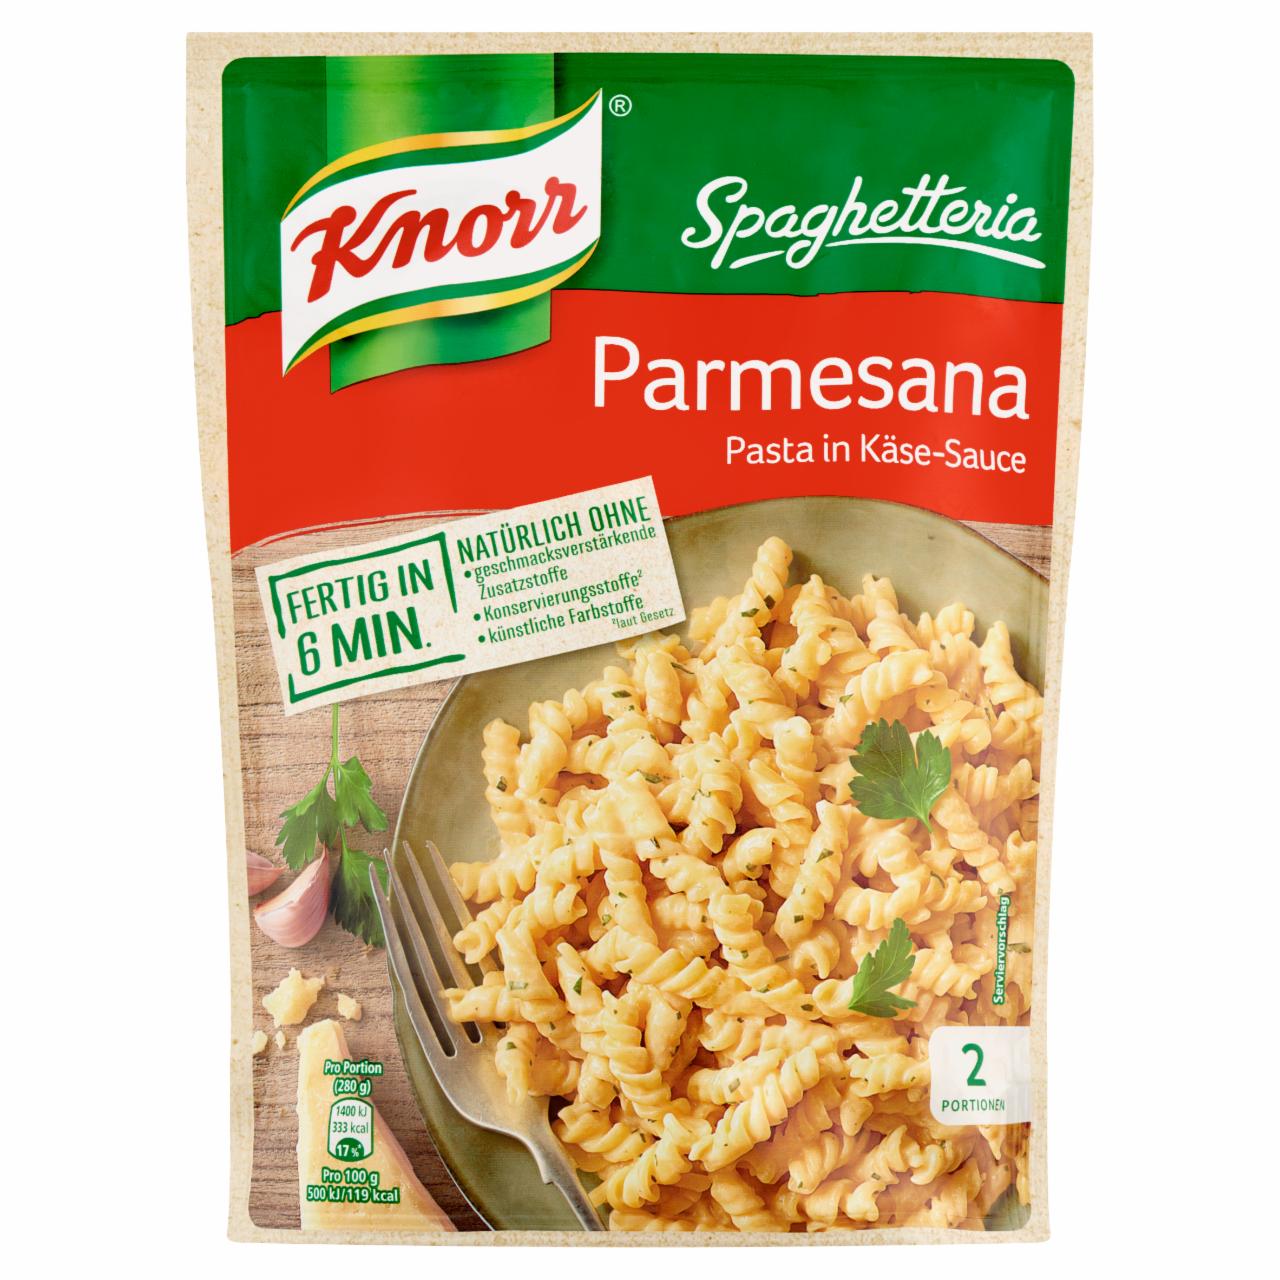 Képek - Knorr Spaghetteria tészta parmezános sajtszósszal 163 g